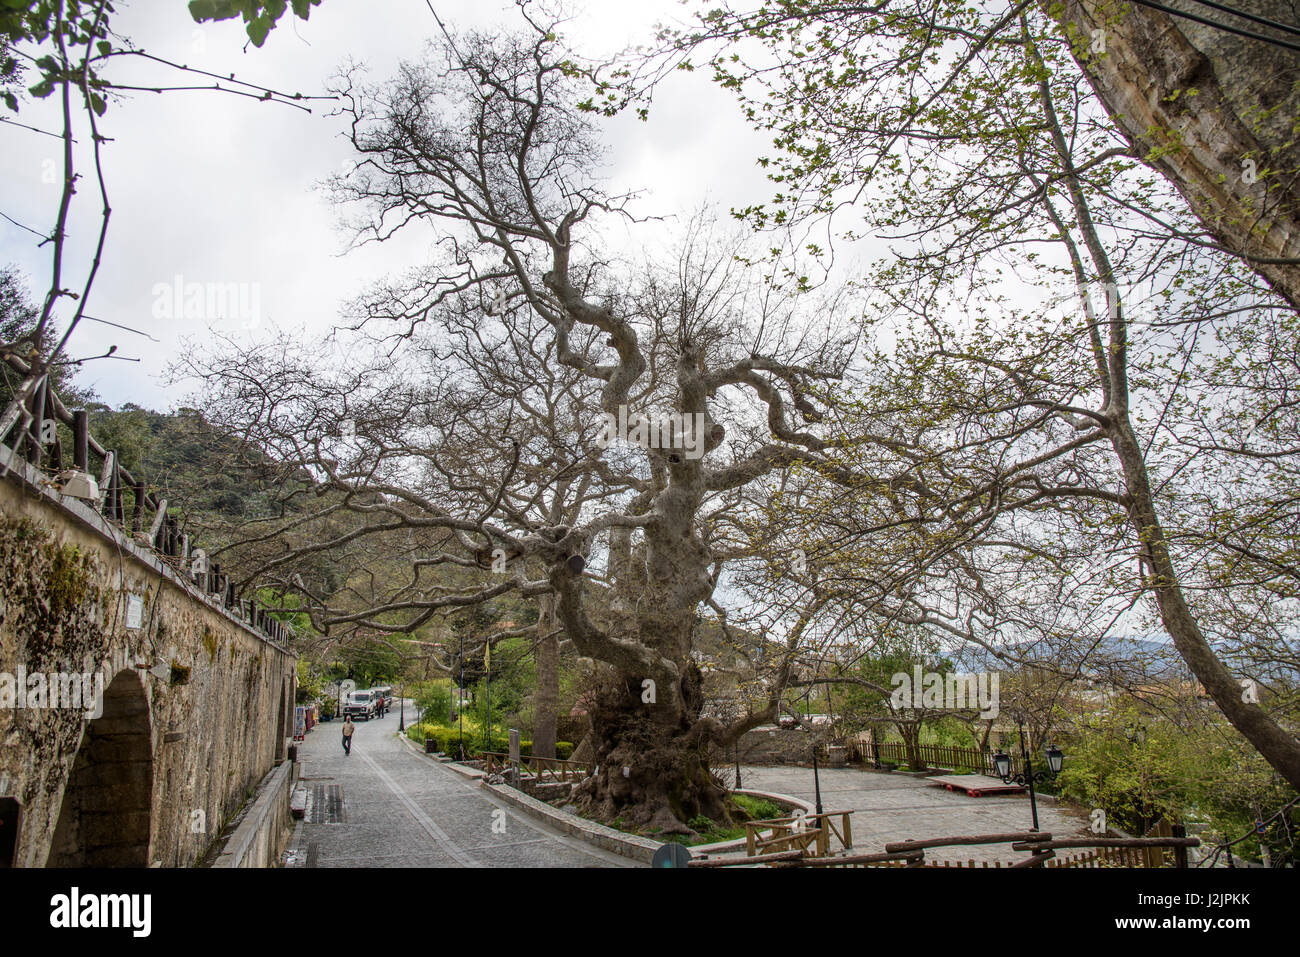 El Monumental árbol de avión en Hersonissos, Lasithi región de Creta. Foto de stock